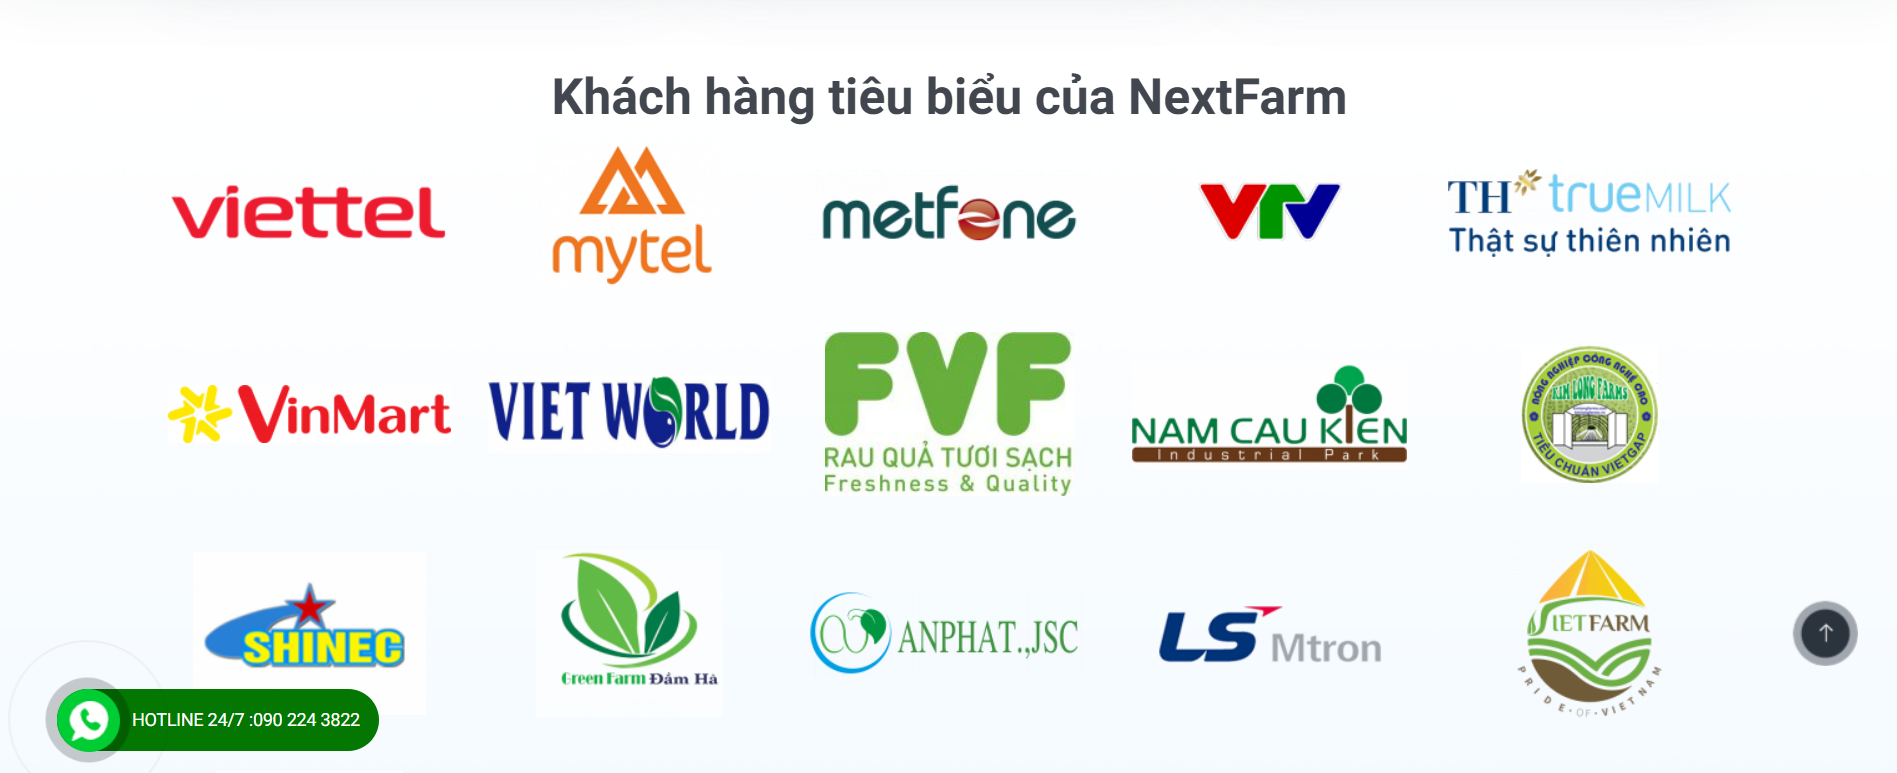 Nhà cung cấp phần mềm nông nghiệp Nextfarm